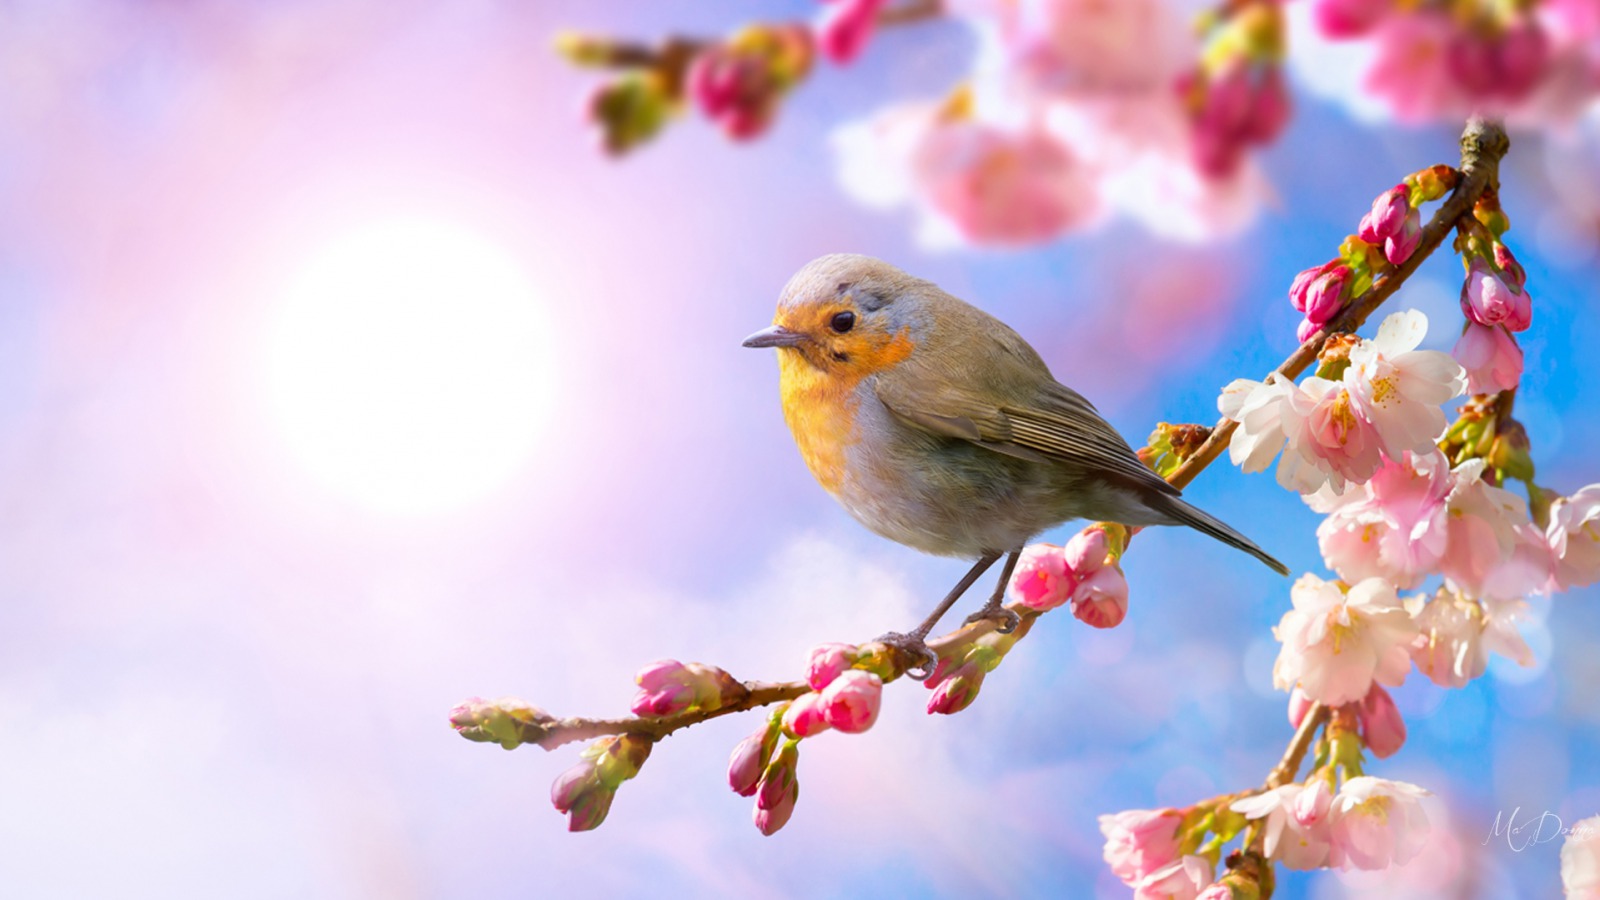 Danh ngôn, Mùa xuân: Người ta thường nói rằng mùa xuân đánh thức những niềm hy vọng trong trái tim của chúng ta. Hãy cùng cảm nhận những nét đẹp đó với danh ngôn mang tinh thần mùa xuân. Chắc chắn bạn sẽ tìm thấy niềm vui và sự tràn đầy sinh lực trong từng câu chữ.